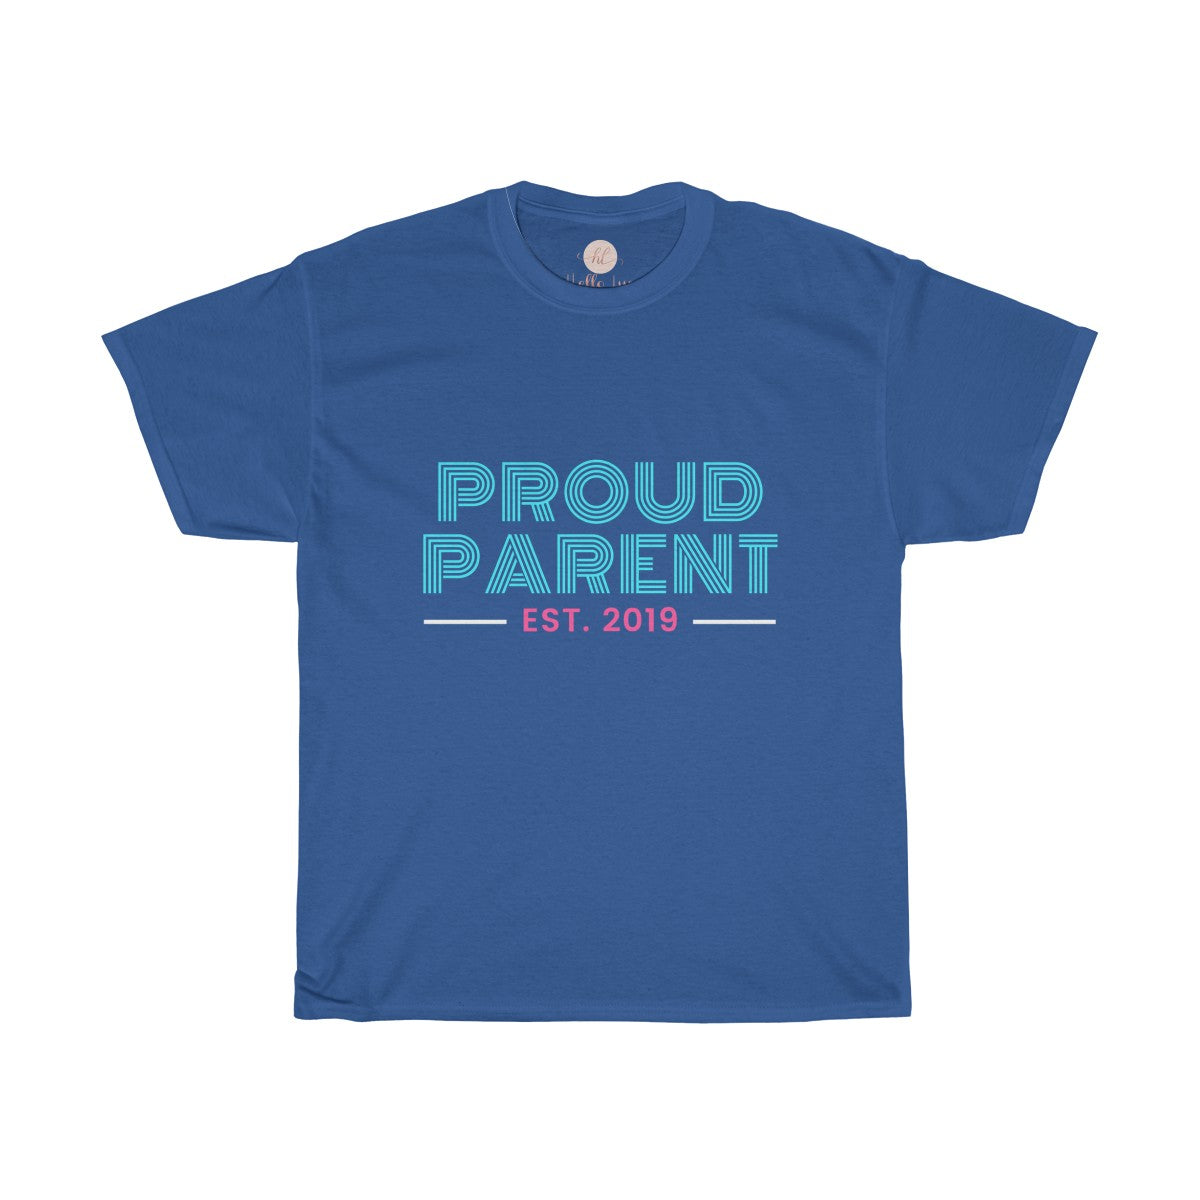 Proud Parent Tee| Parent Life Shirt| Parents T-shirt| Customize Shirt